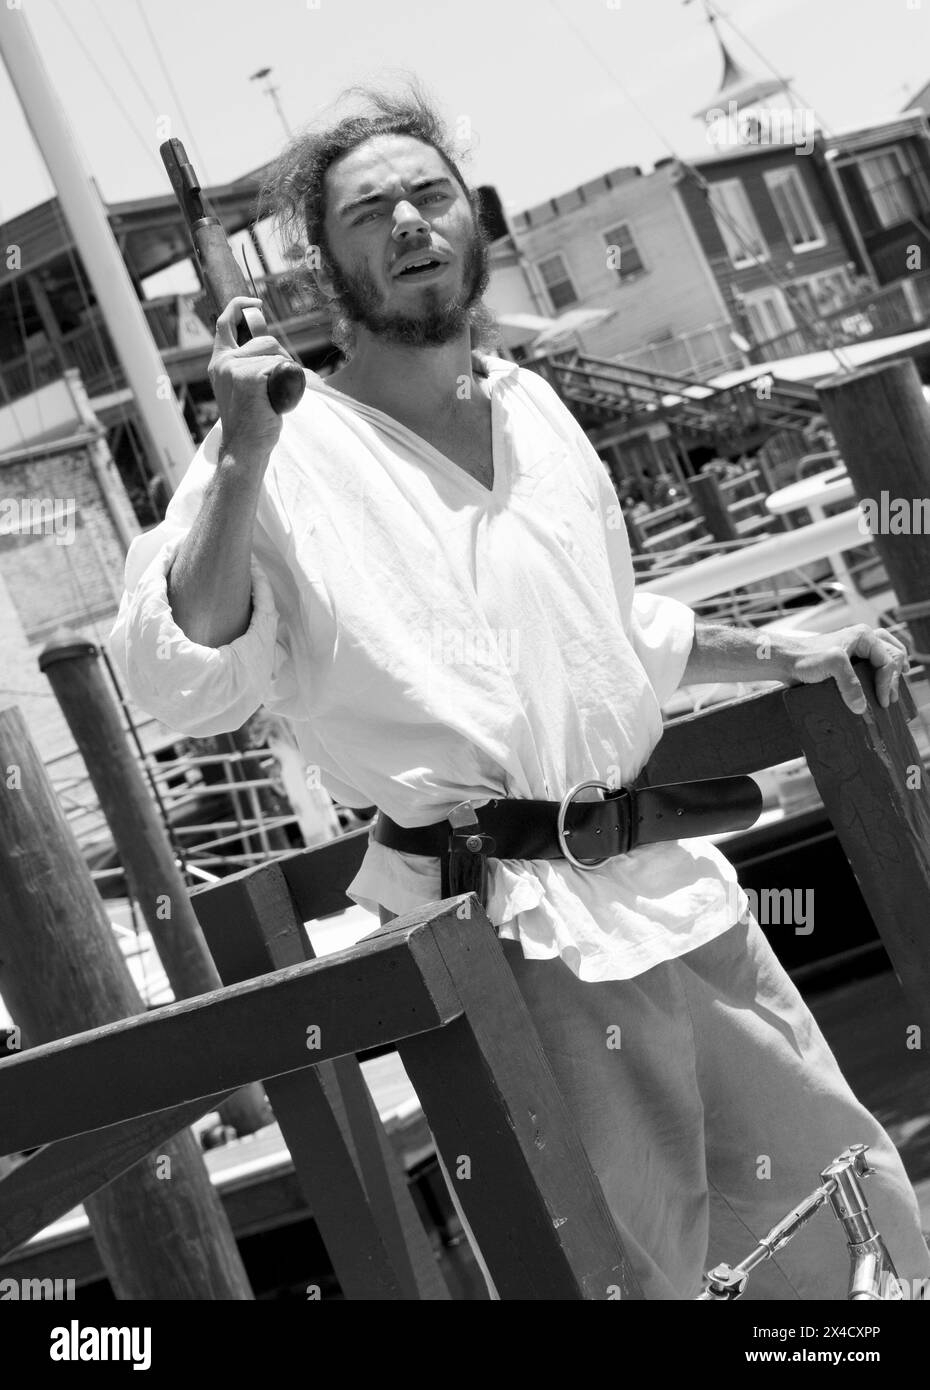 Ein Pirat in voller Kostümierung schießt eine Pistole vom Deck des Jolly Rover Großschiffs, das am Flussufer in Georgetown, South Carolina, USA, angedockt ist. Stockfoto